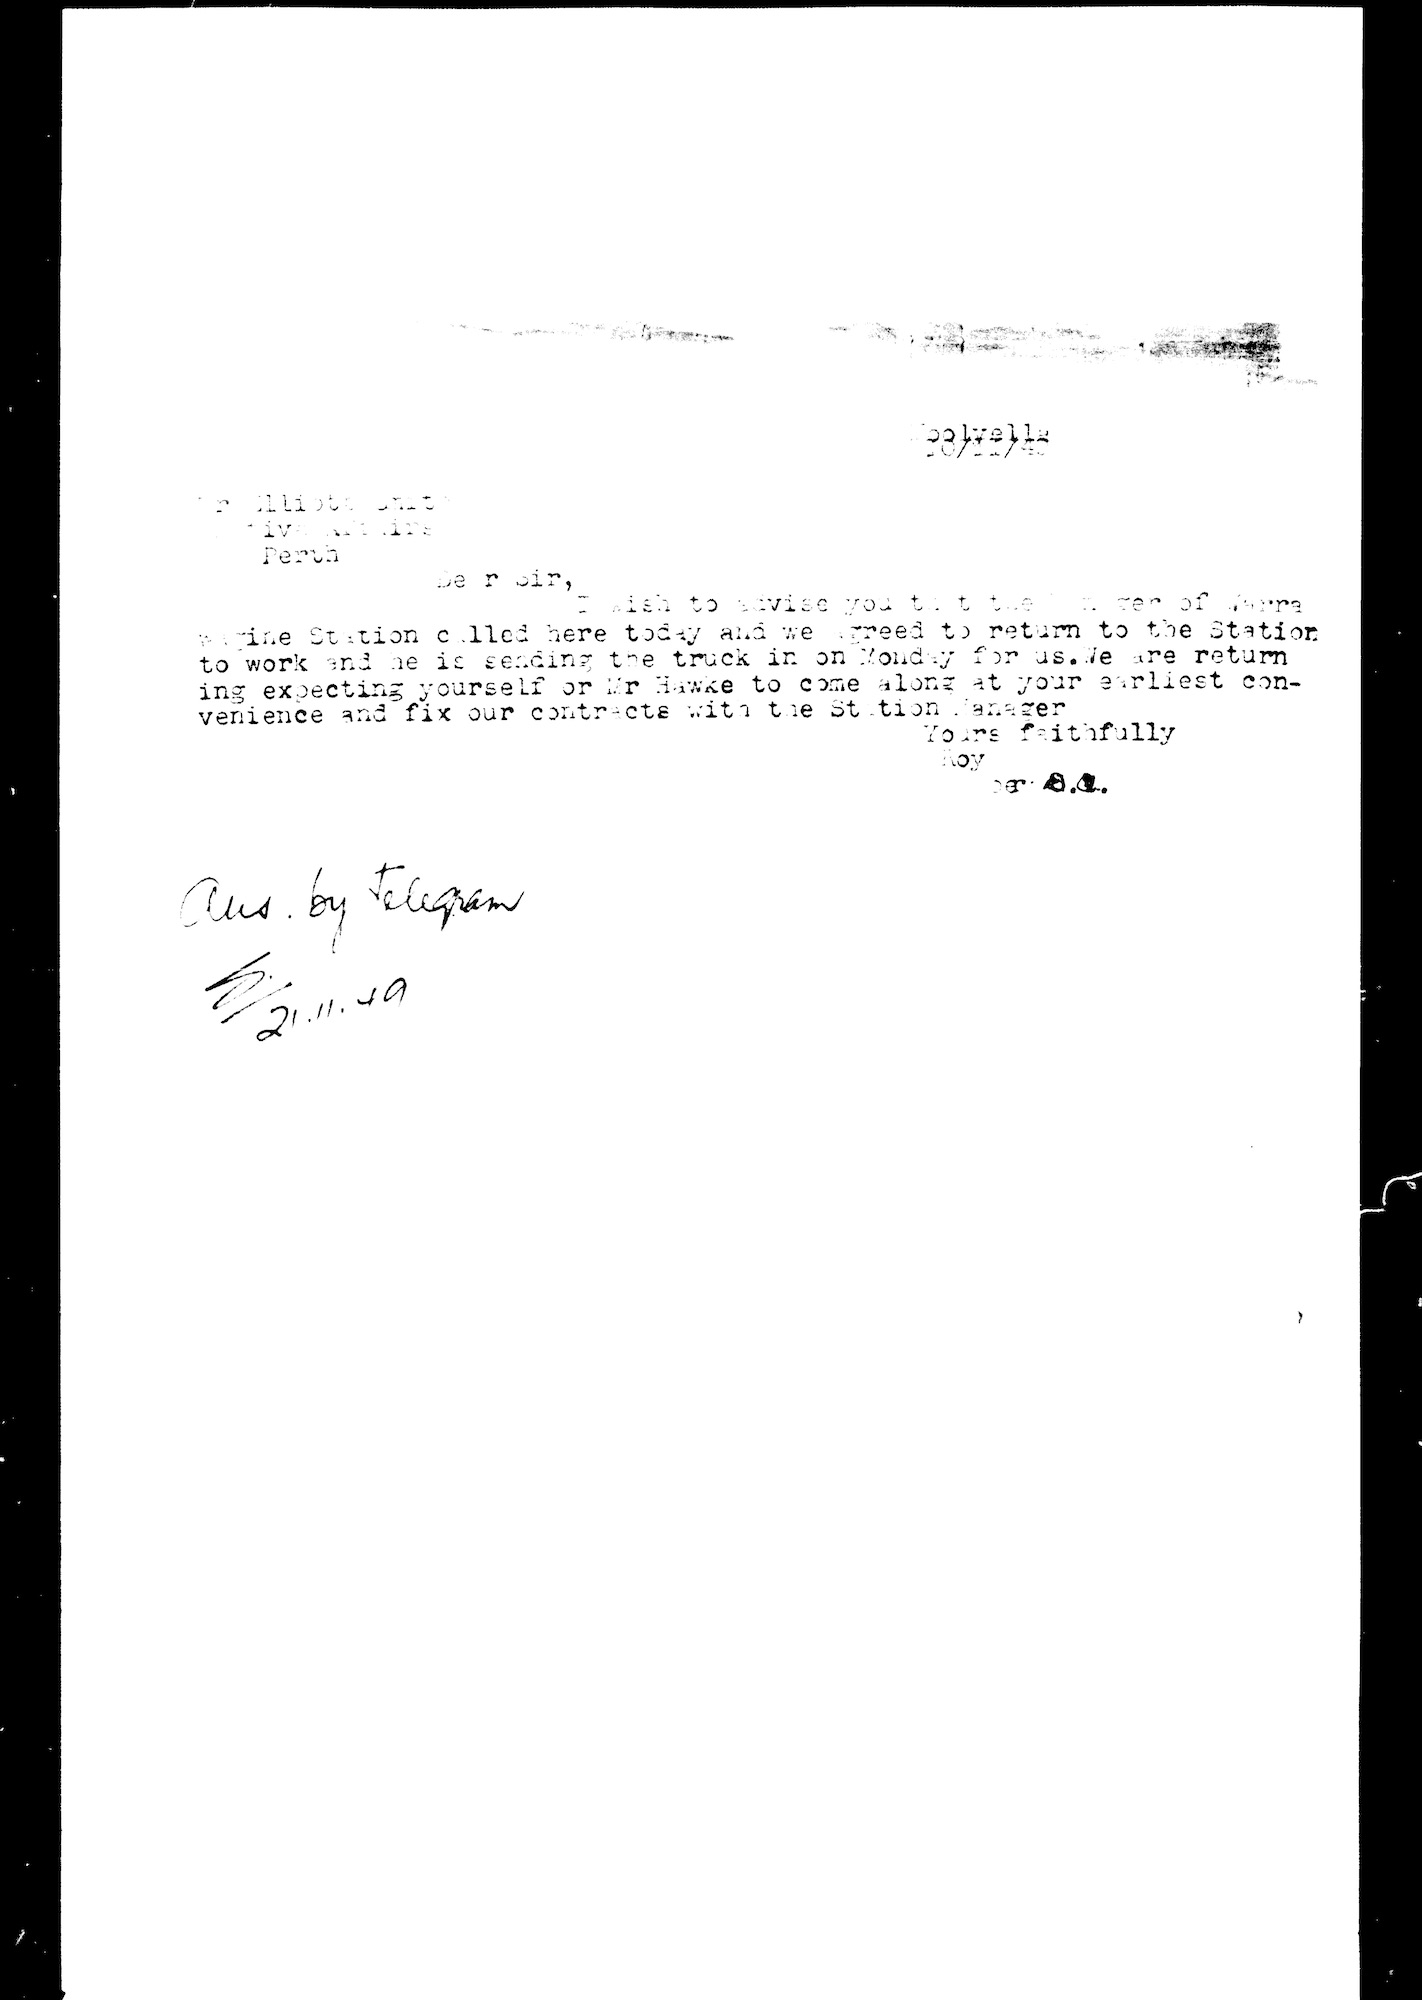 Roy Dobey to Sydney Elliott-Smith, telegram, 20 November 1949